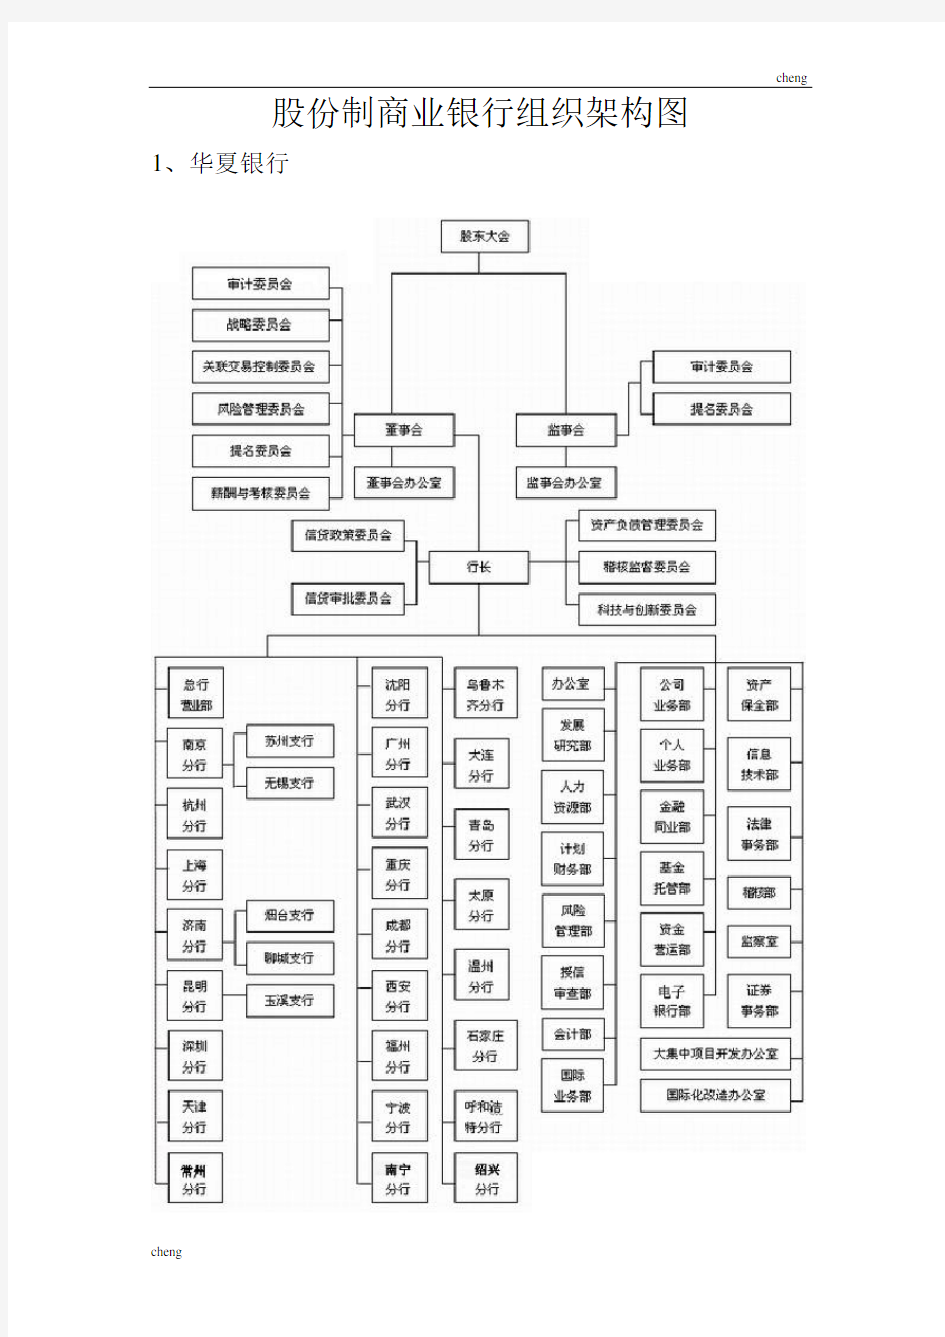 商业银行的组织机构架构图